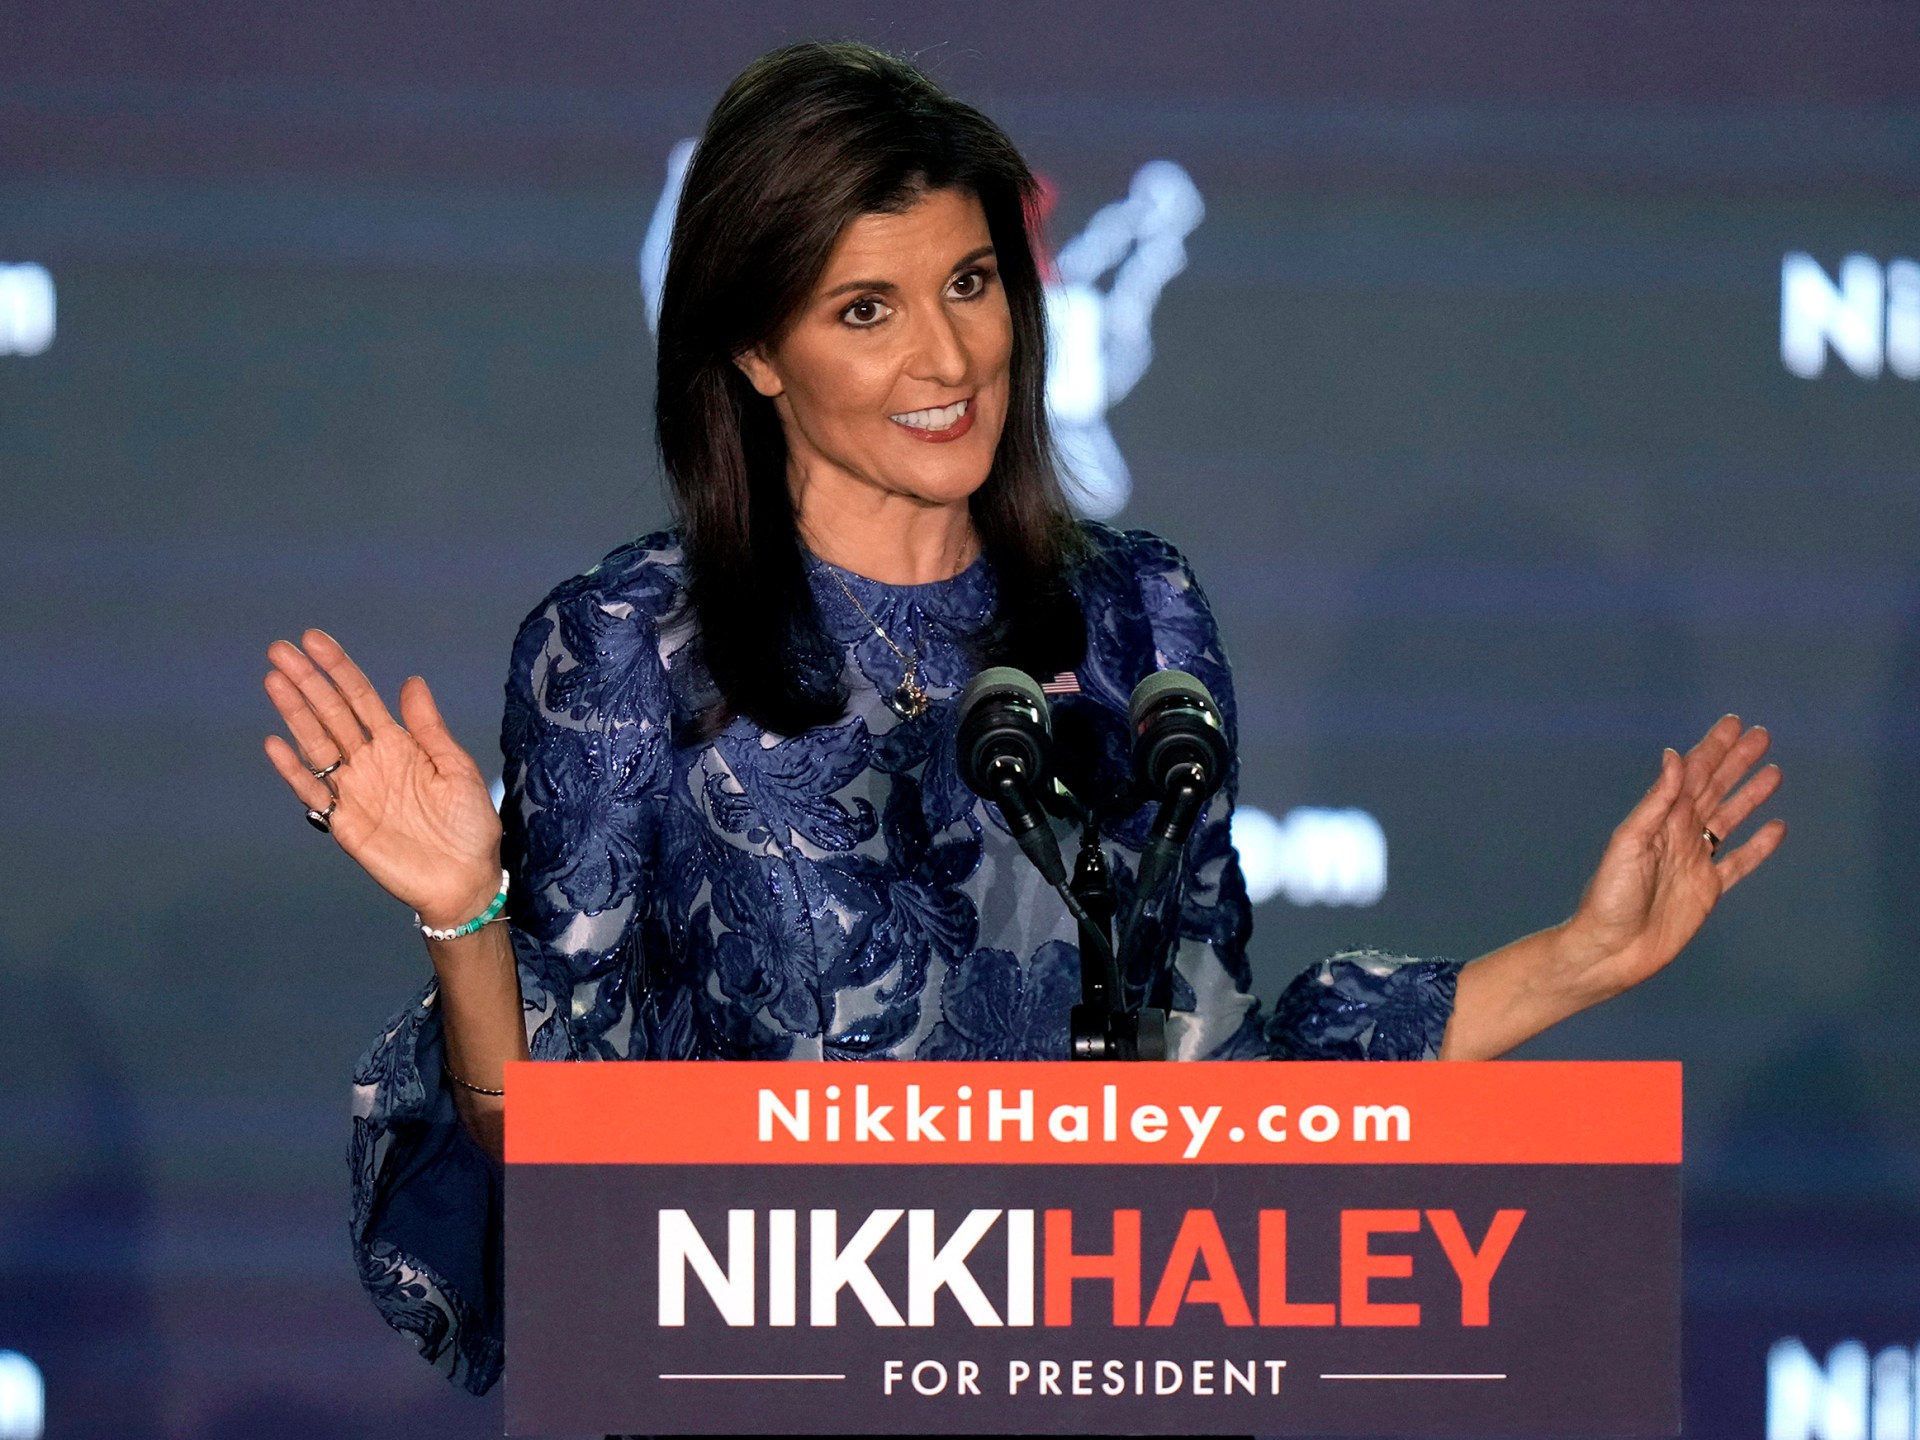 La candidata presidencial estadounidense Nikki Haley usa un cameo en SNL para burlarse de Trump |  Noticias sobre las elecciones estadounidenses de 2024